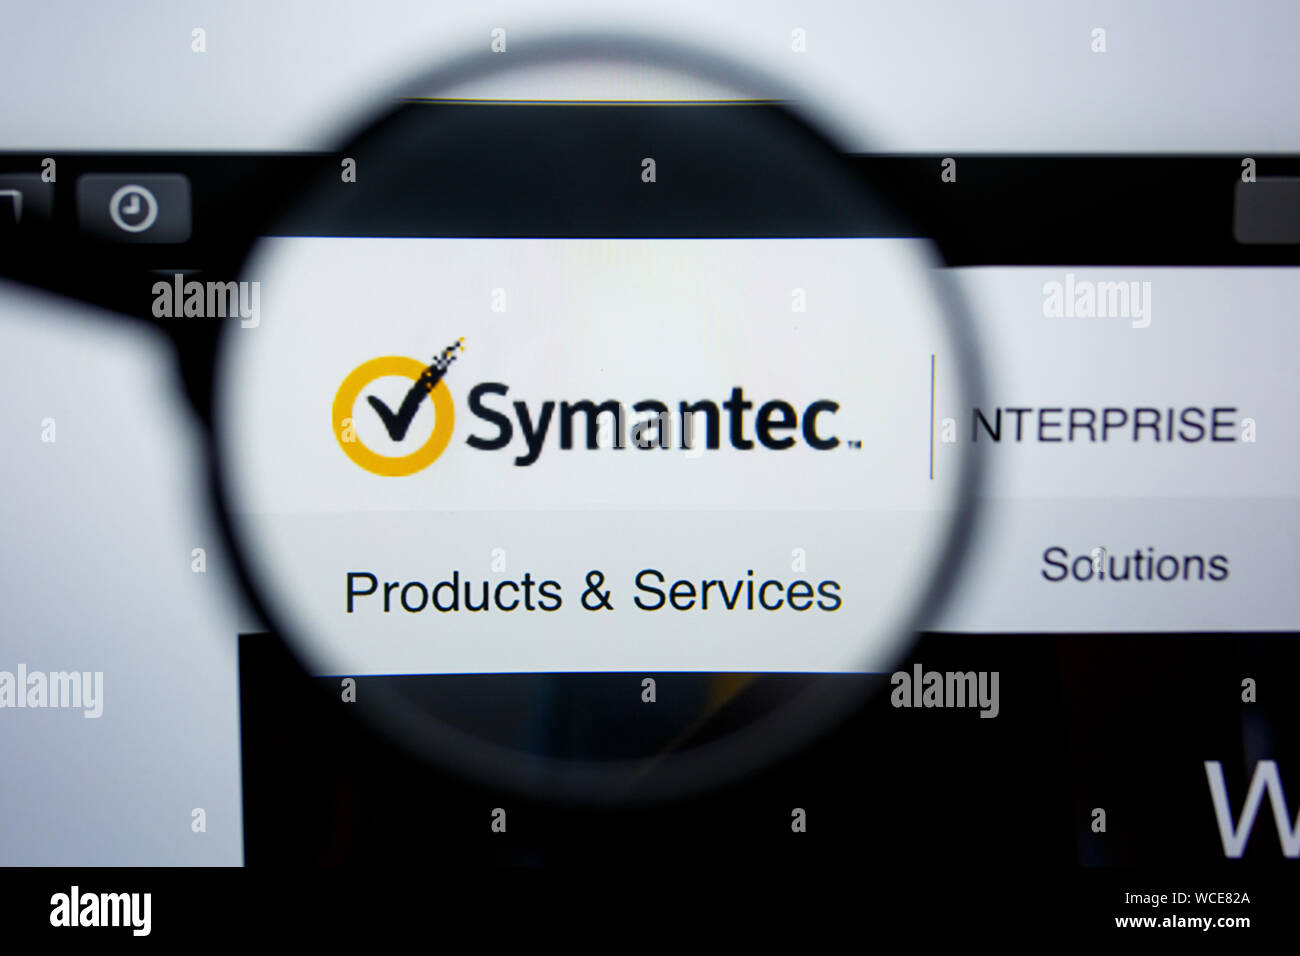 Los Angeles, Kalifornien, USA - 29 Jule2019: Illustrative Editorial von SYMANTEC.COM Homepage. SYMANTEC. Logo sichtbar auf dem Anzeigebildschirm angezeigt. Stockfoto